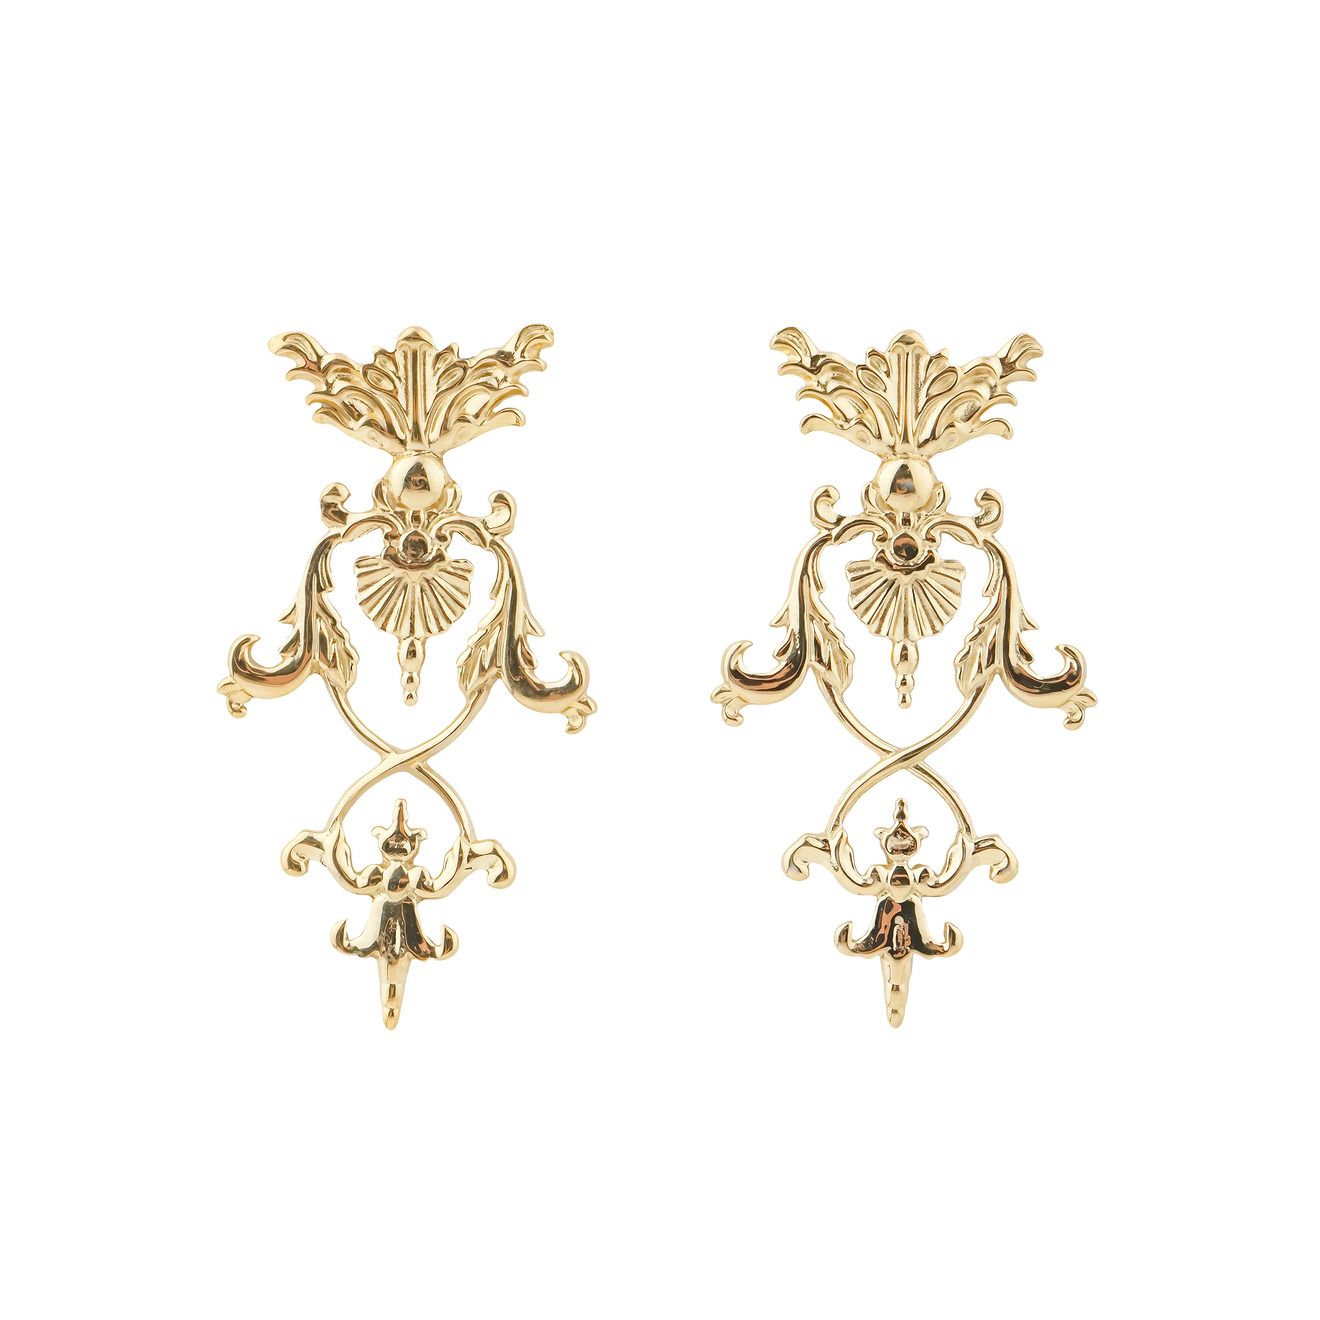 LUTA Jewelry Позолоченные серебряные серьги в барочном стиле luta jewelry серебряные асимметричные позолоченные серьги марокко